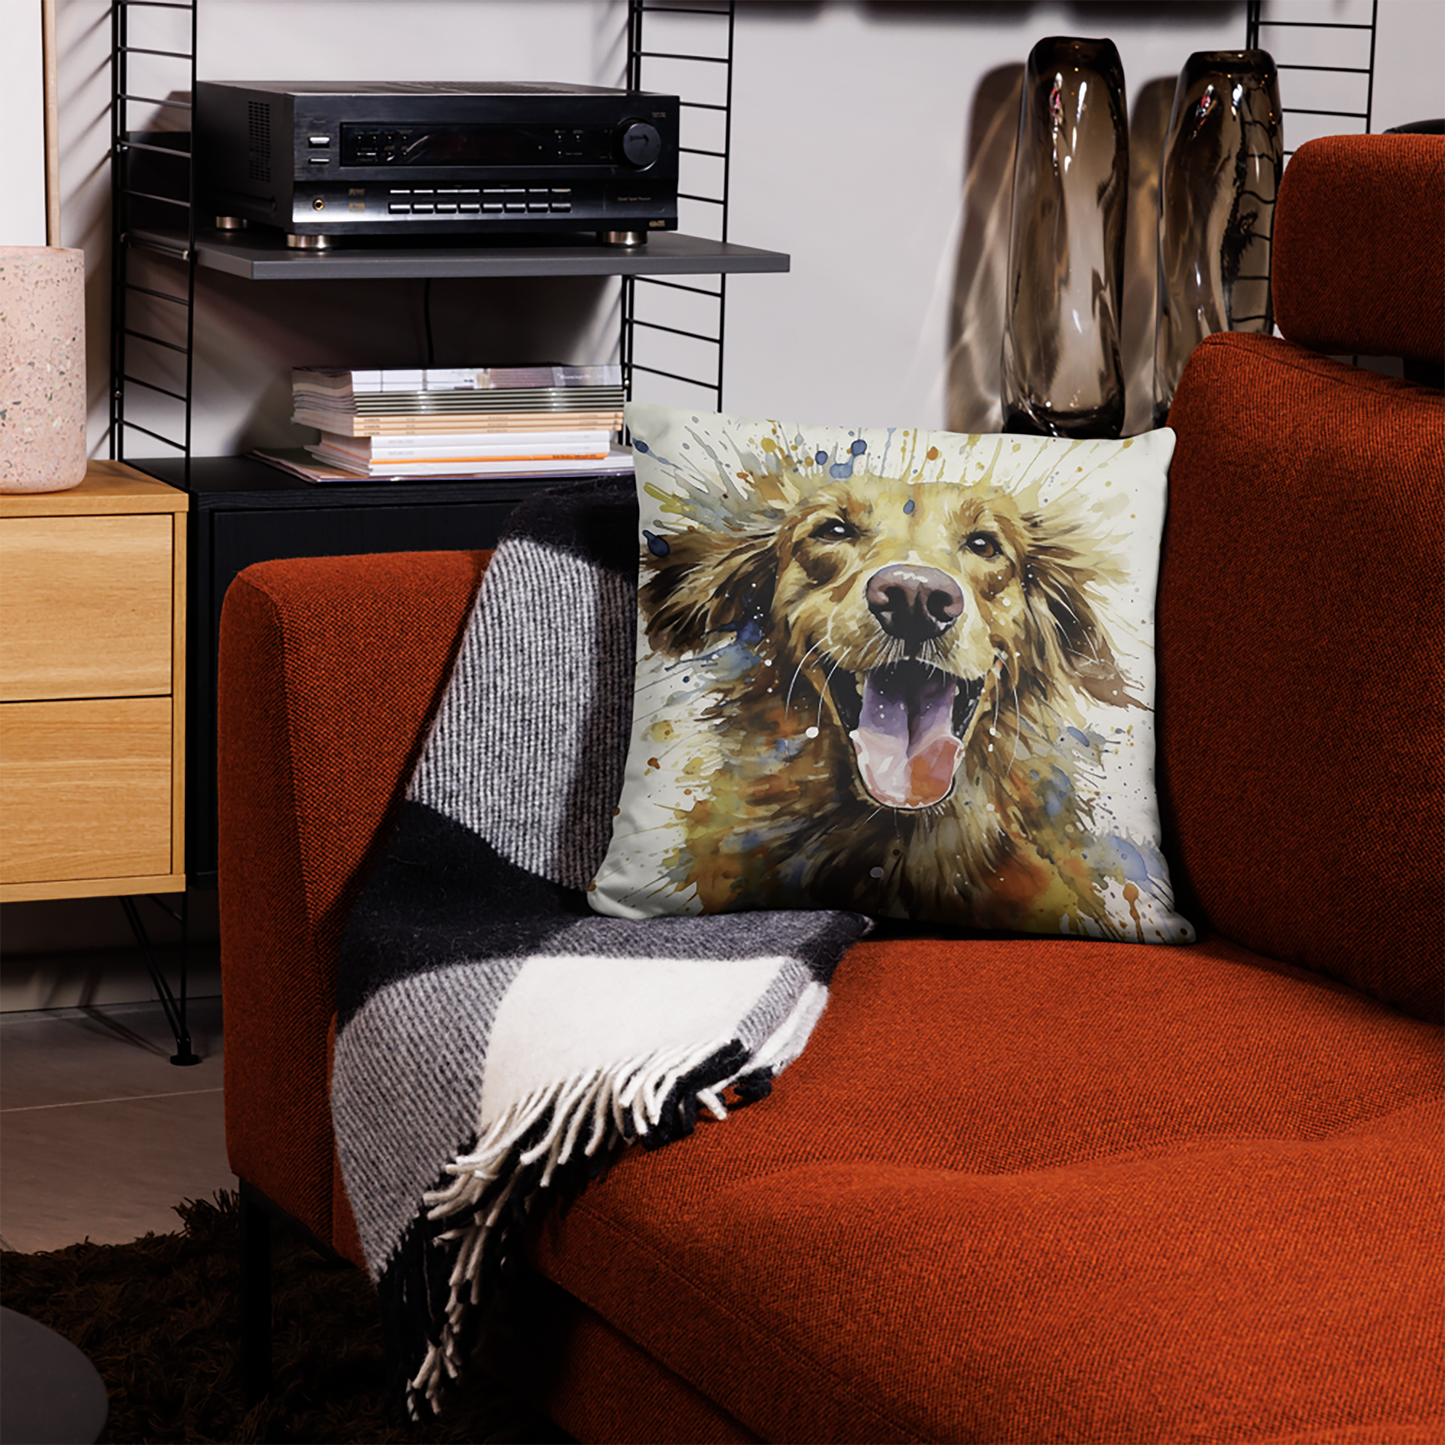 Dog Throw Pillow Explosive Watercolor Golden Retriever Polyester Decorative Cushion 18x18